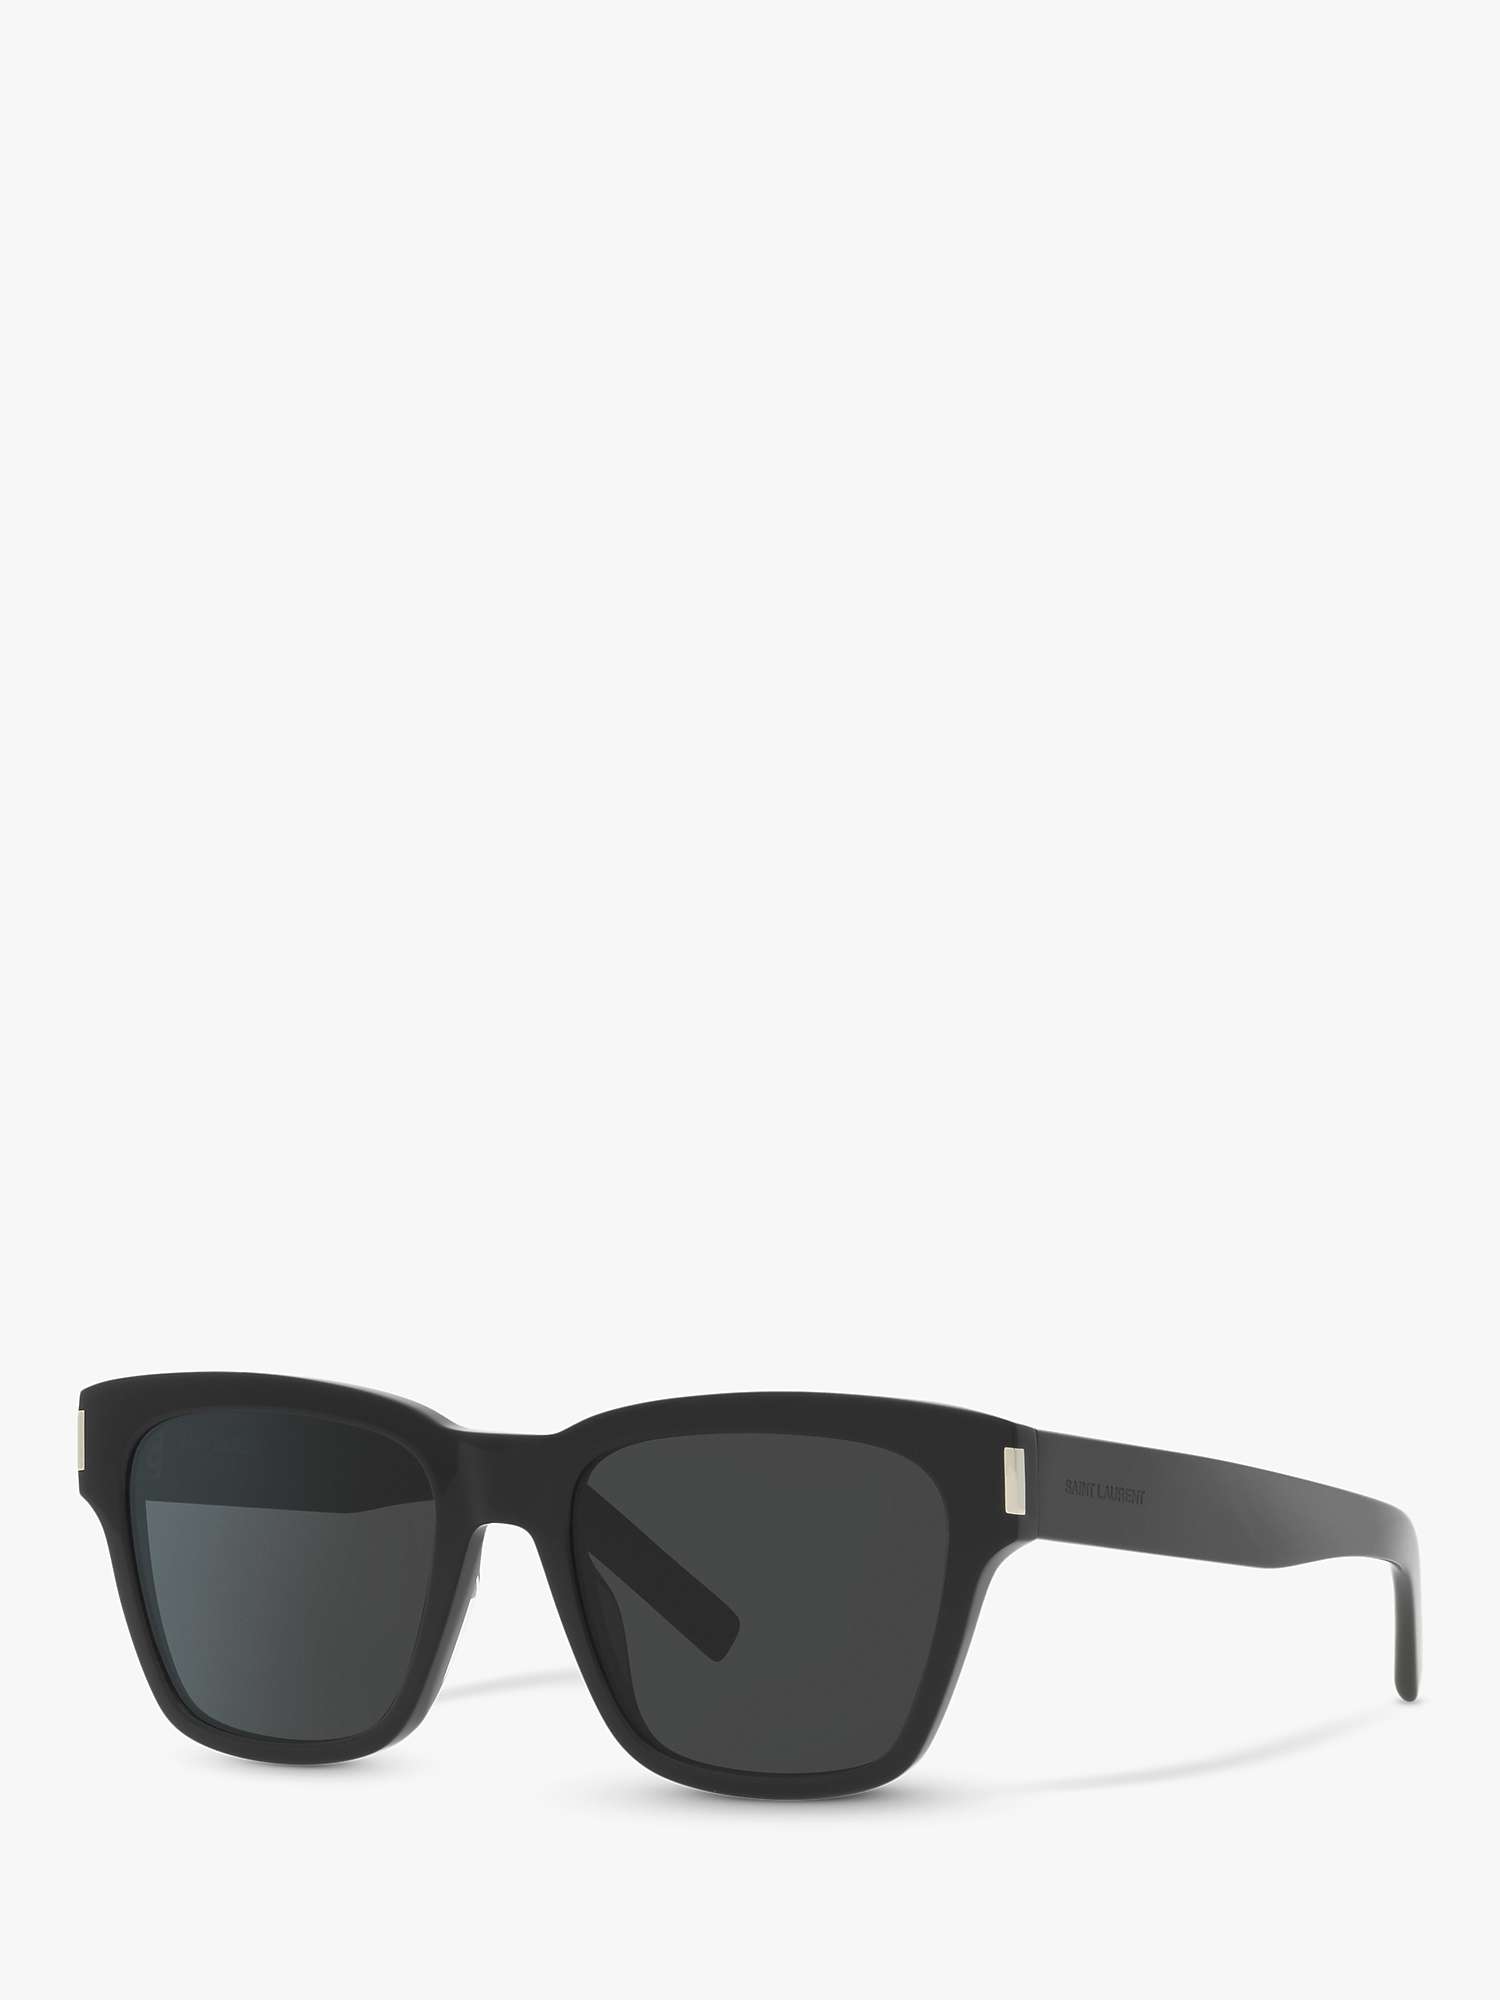 Buy Yves Saint Laurent SL 560 Unisex D-Frame Sunglasses Online at johnlewis.com